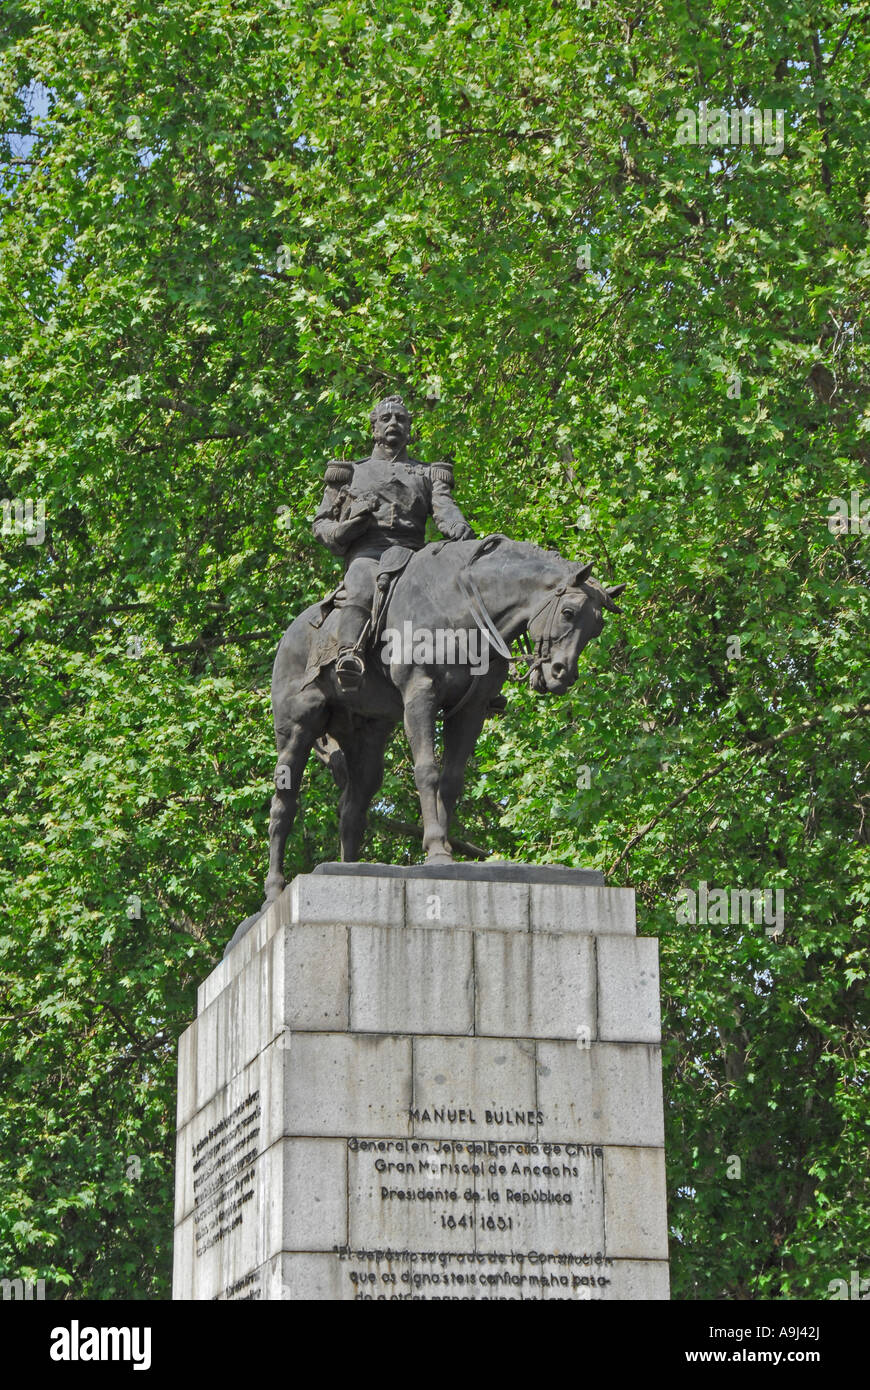 Santiago Chile Manuel Bulnes Prieto statue historic figure former chilean president Stock Photo